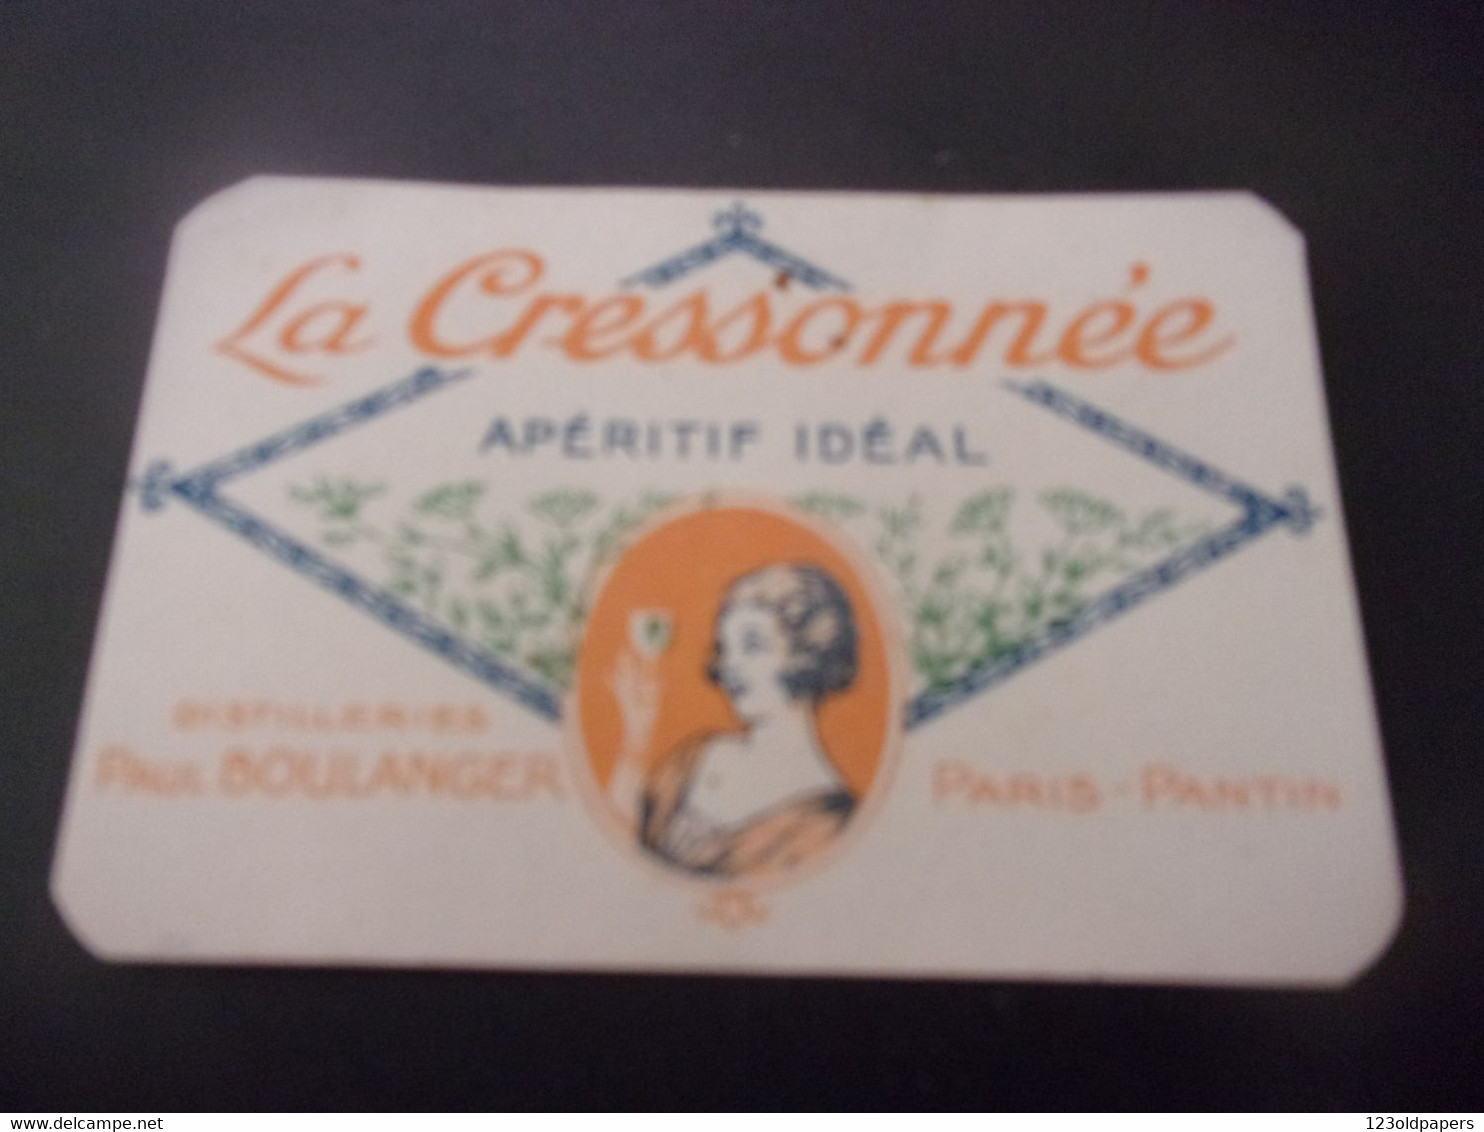 ♥️  Publicité Absinthe "LA CRESSONNÉE" - Apéritif Idéal - Distillerie Paul Boulanger Paris 1928 CALENDRIER 1 ER SEMESTRE - Small : 1921-40